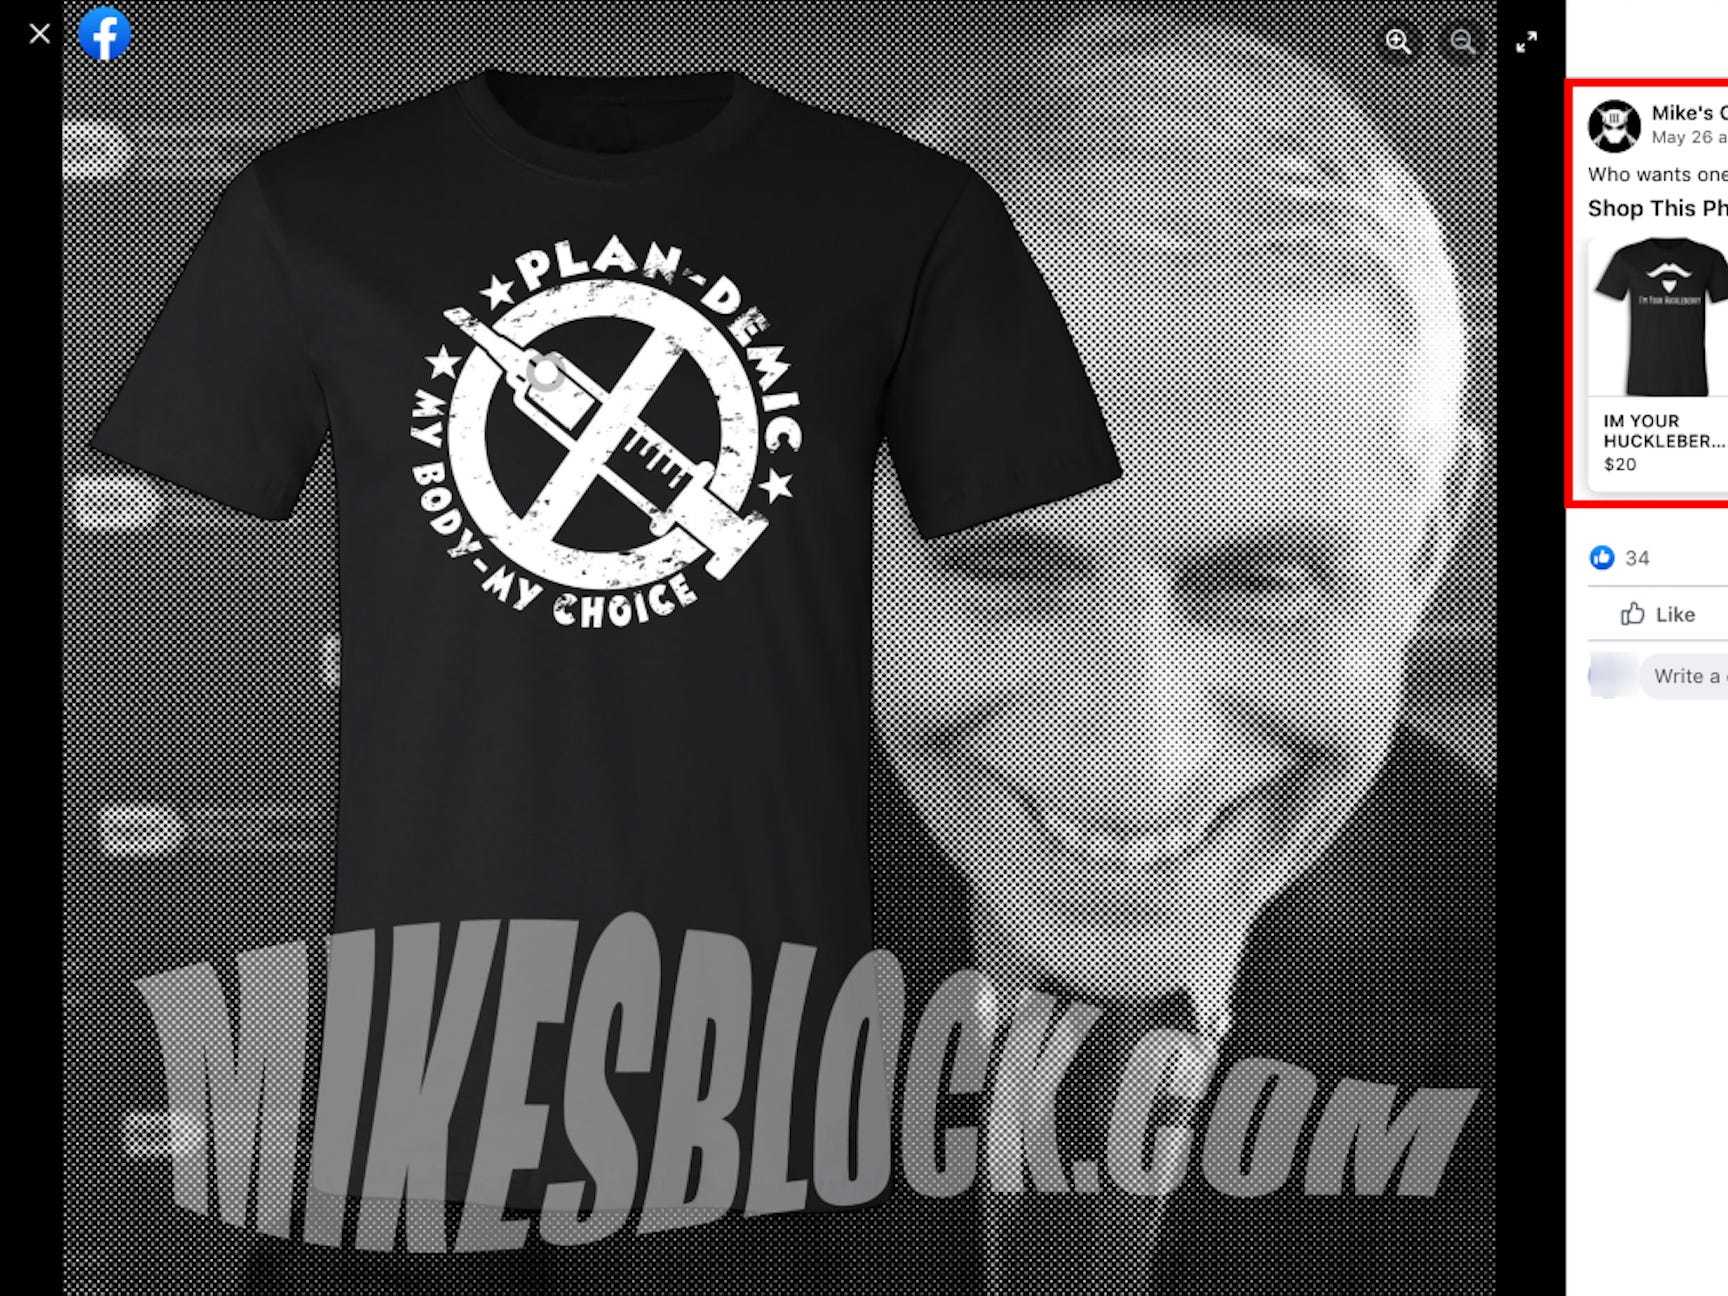 Militia anti-vaxx t-shirt